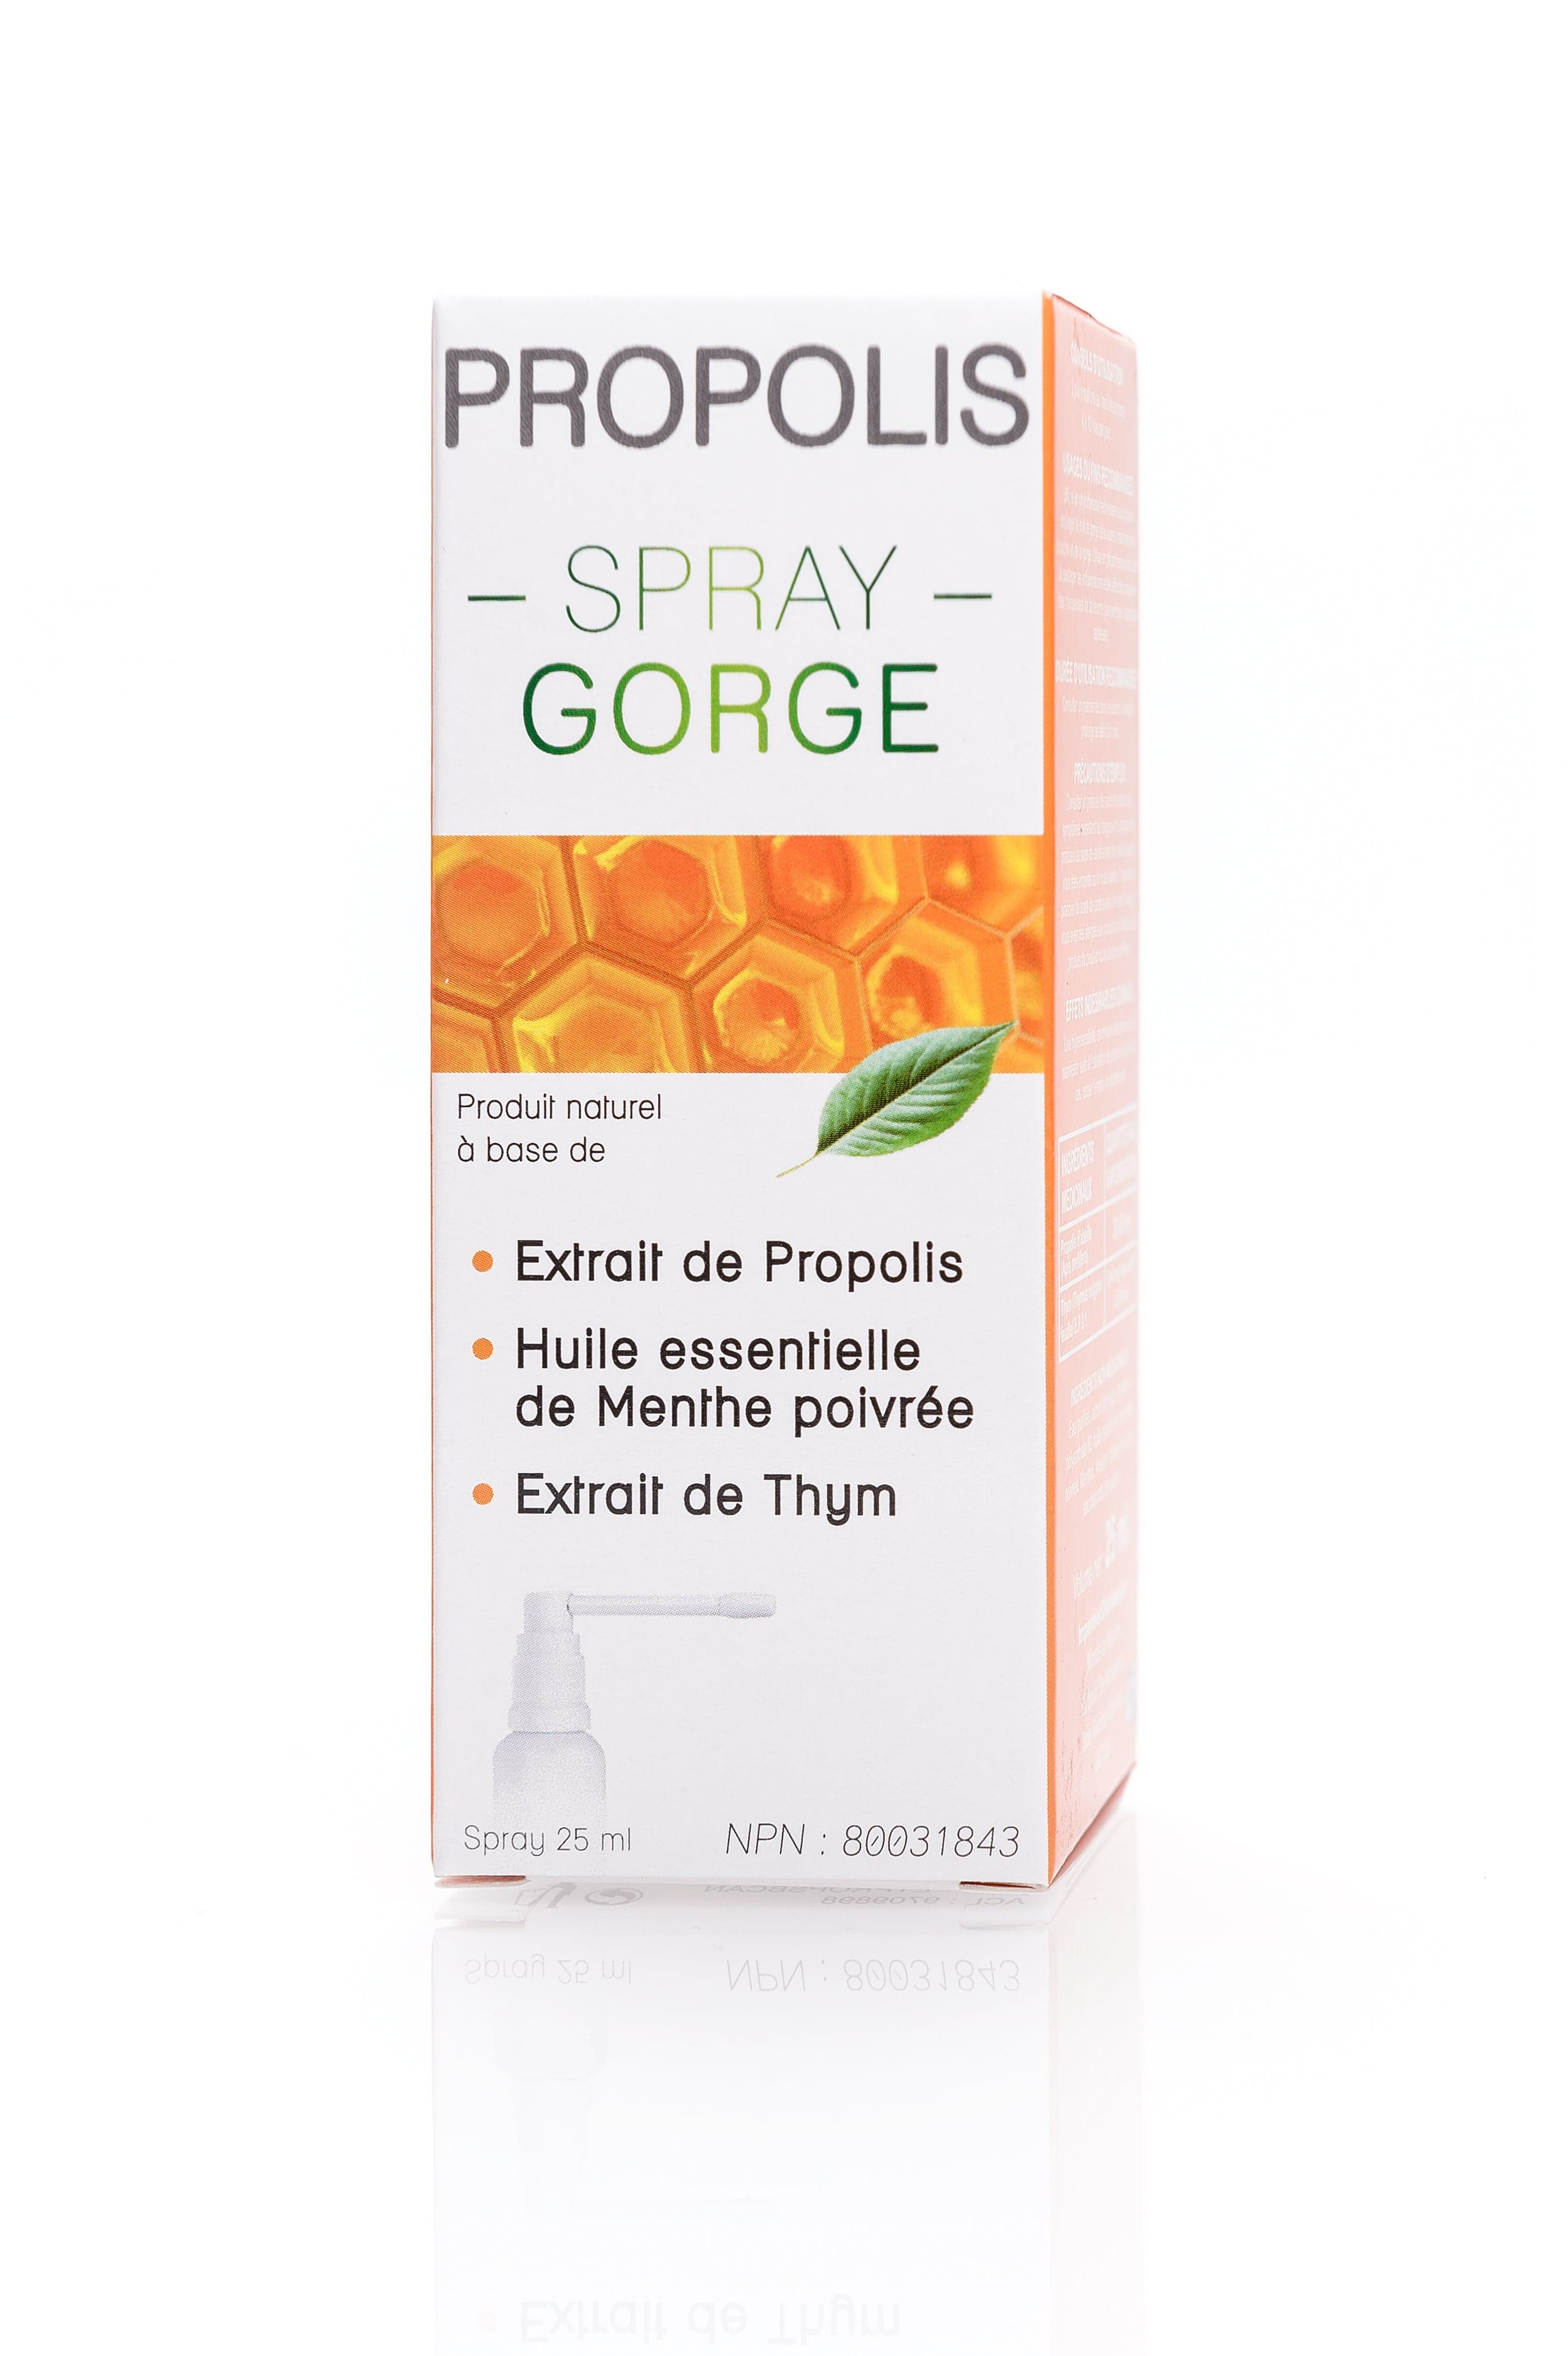 3 CHÊNES LABORATOIRE Soins & beauté Propolis gorge vaporisateur (NPN80037843) 25ml